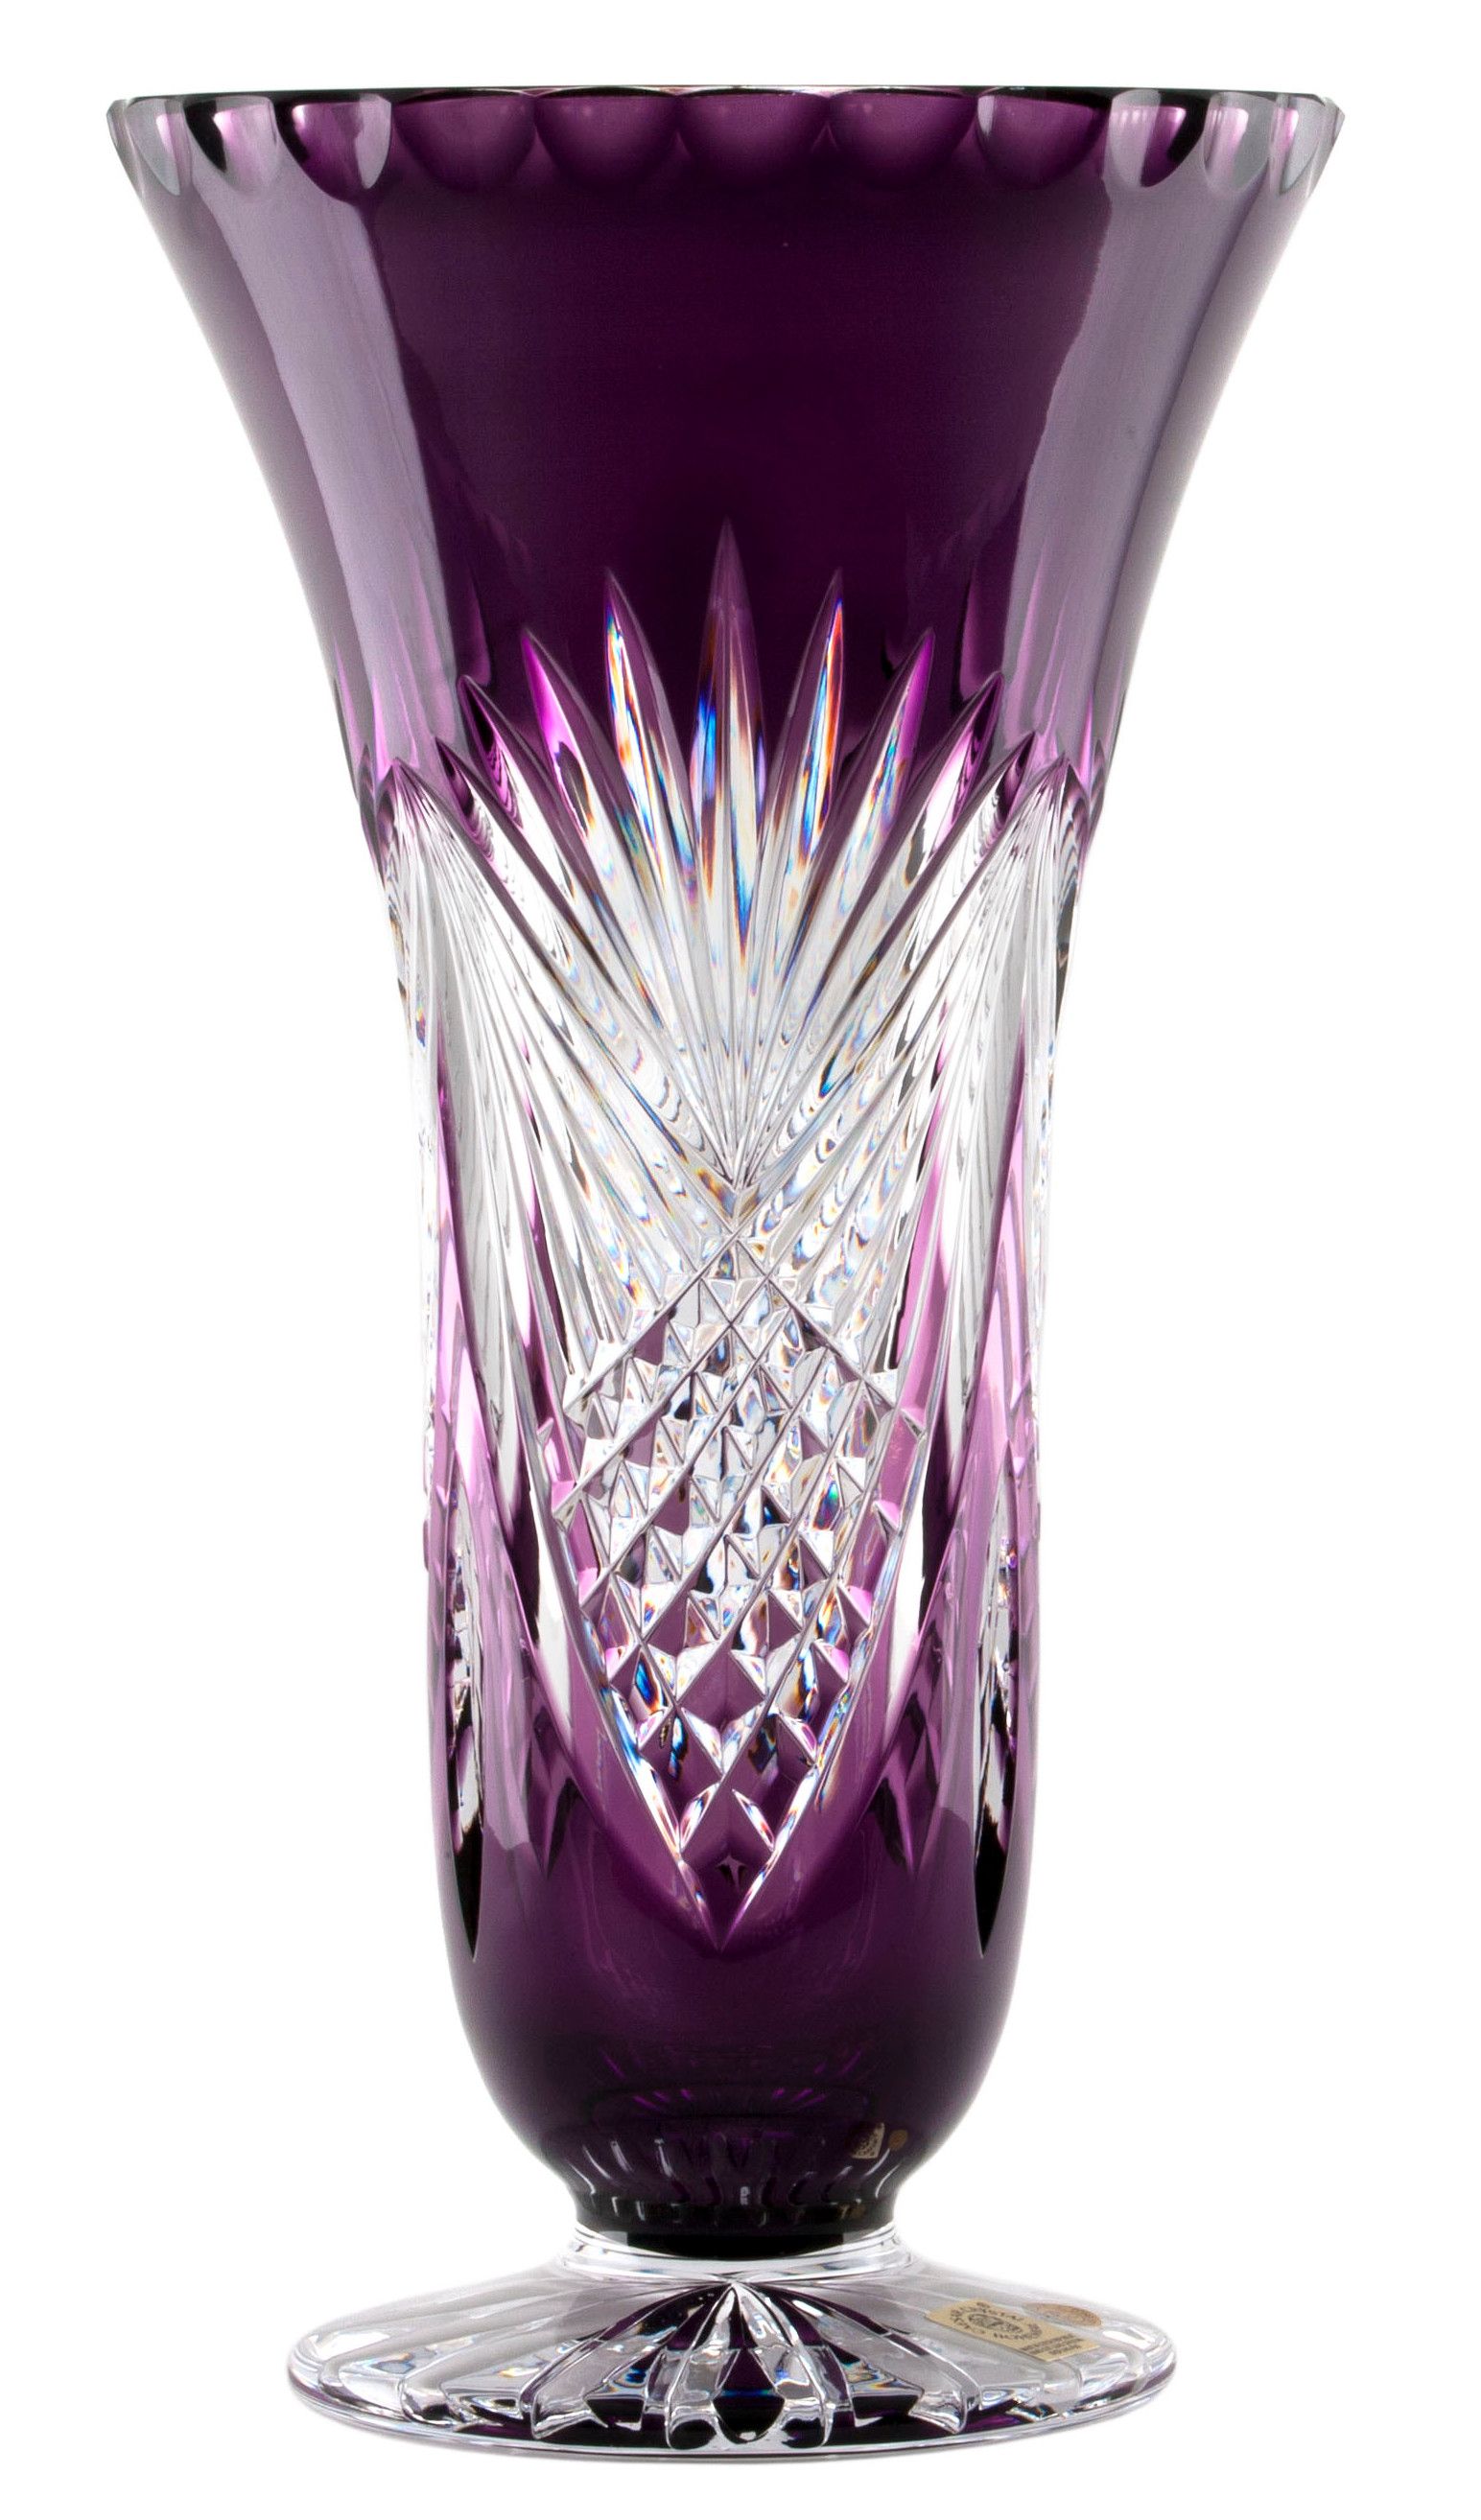 Krištáľová váza Janette, farba fialová, výška 280 mm